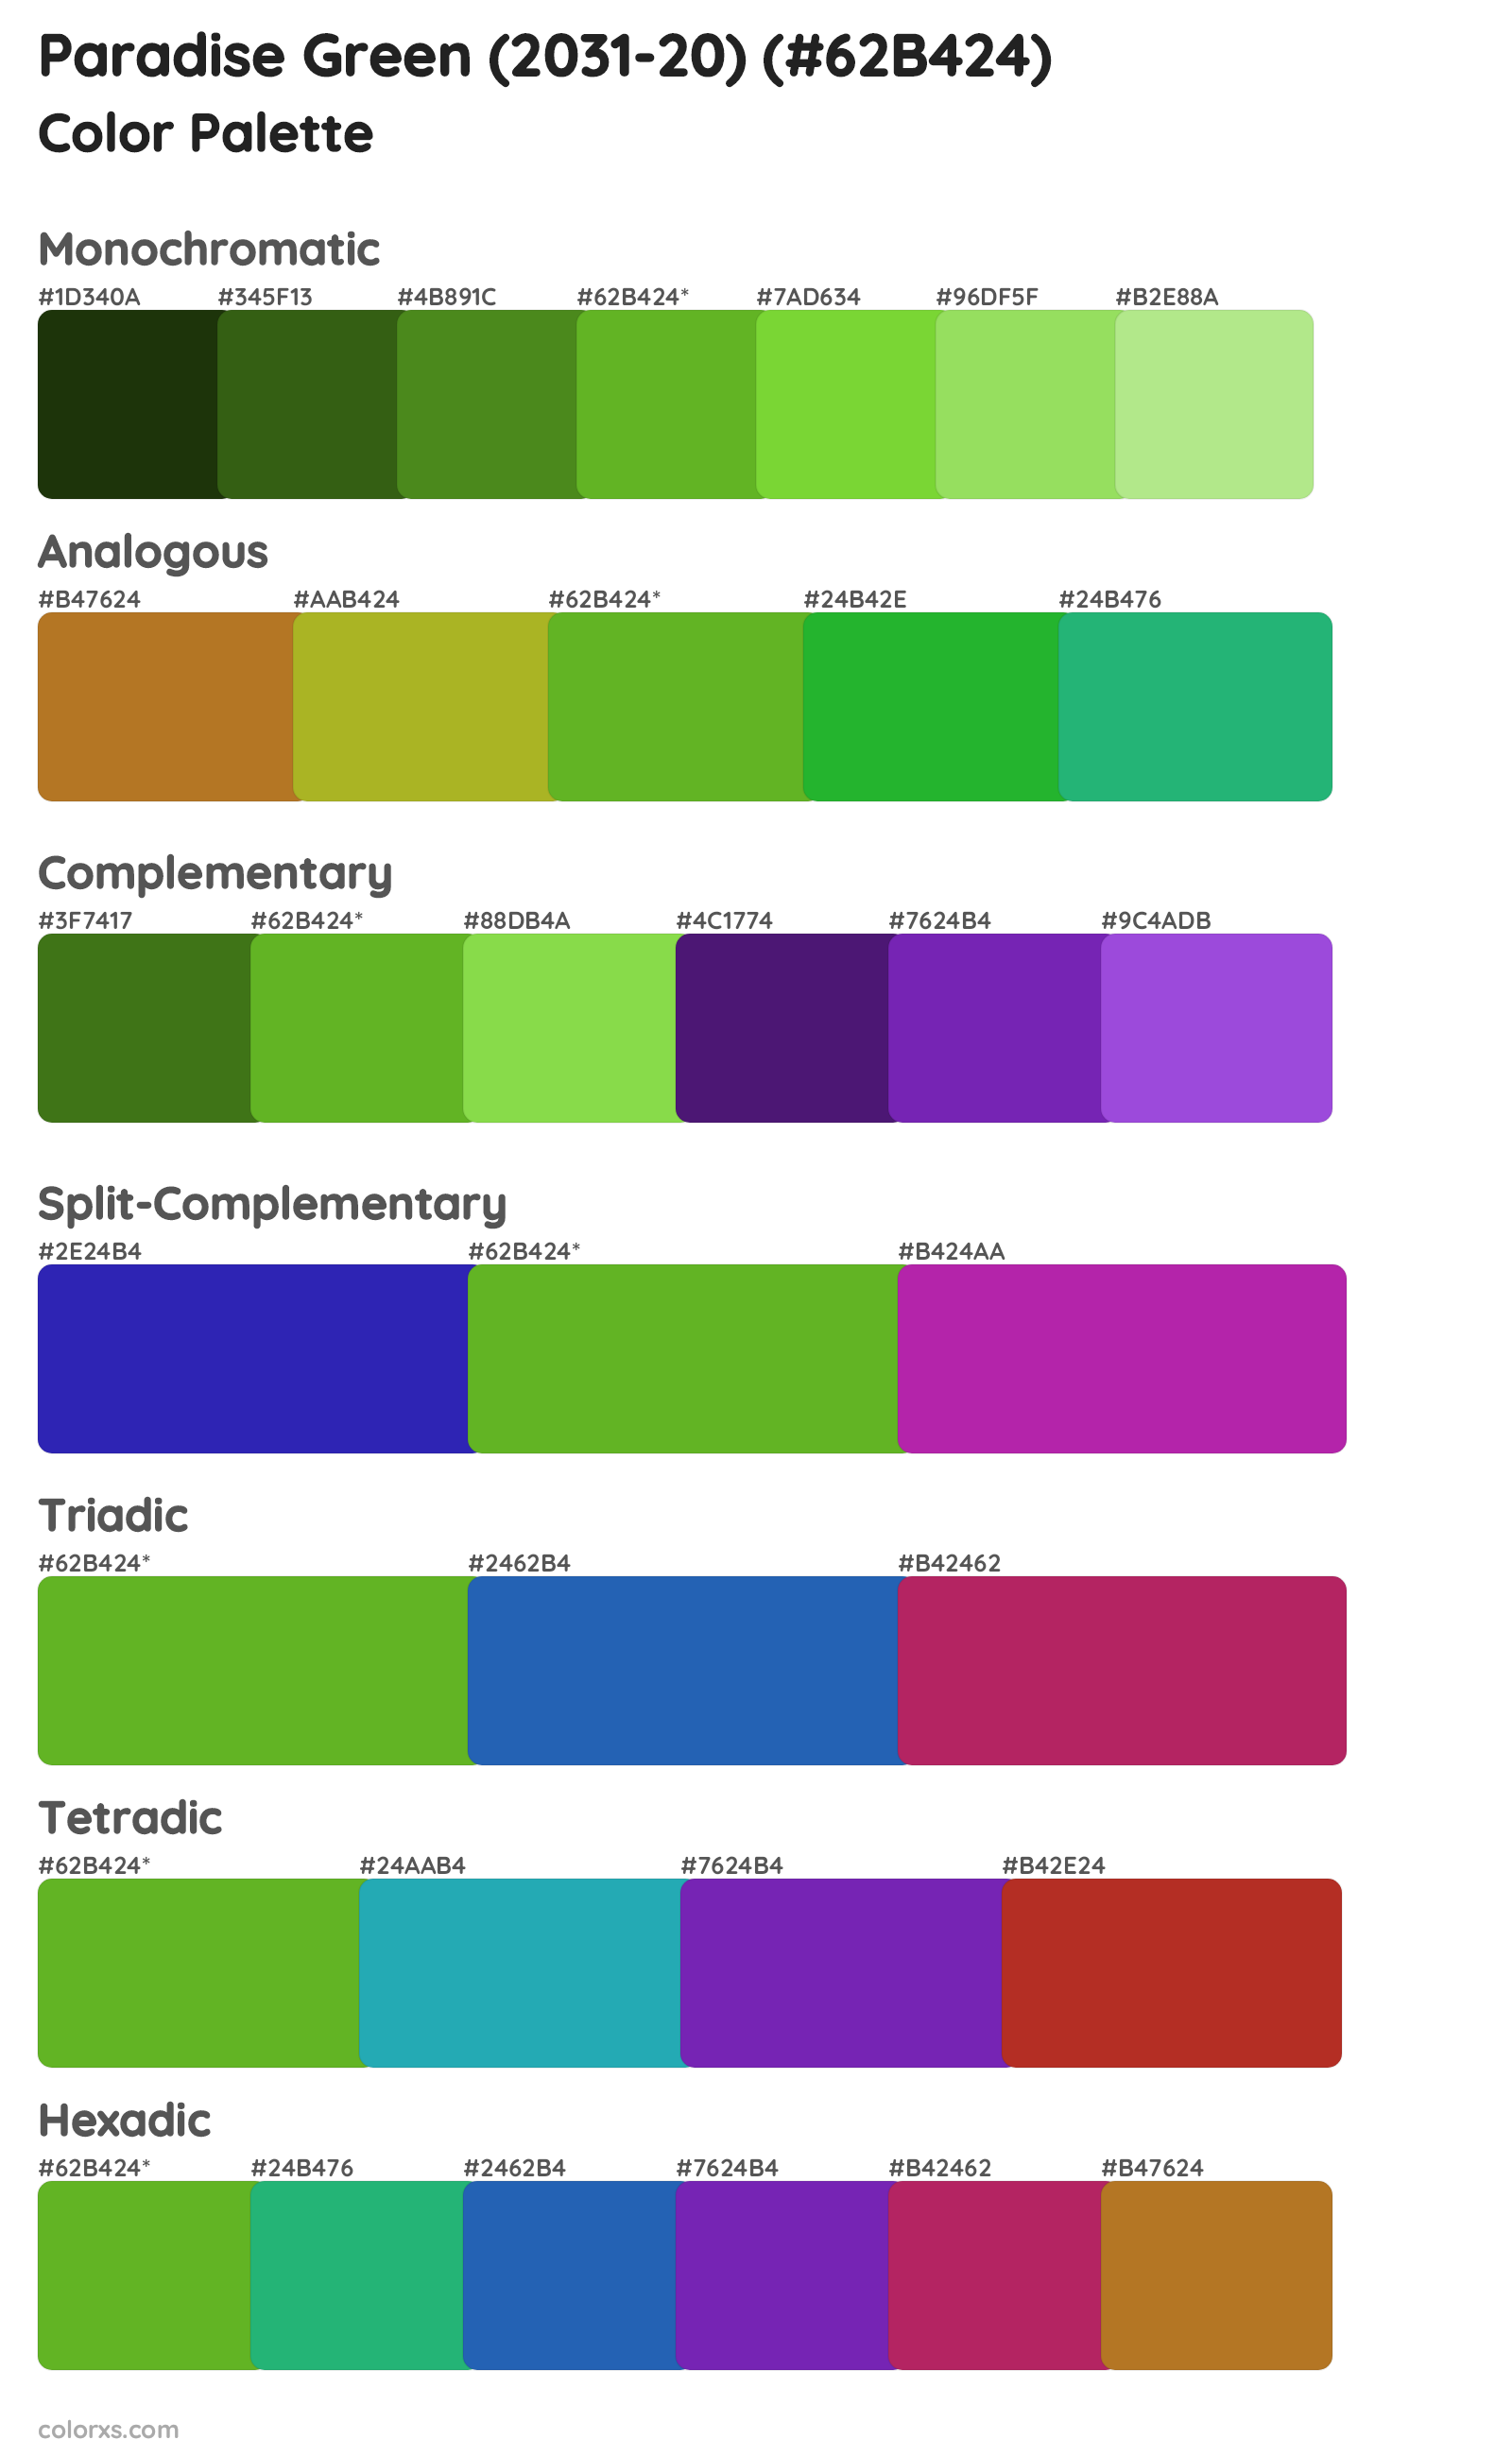 Paradise Green (2031-20) Color Scheme Palettes